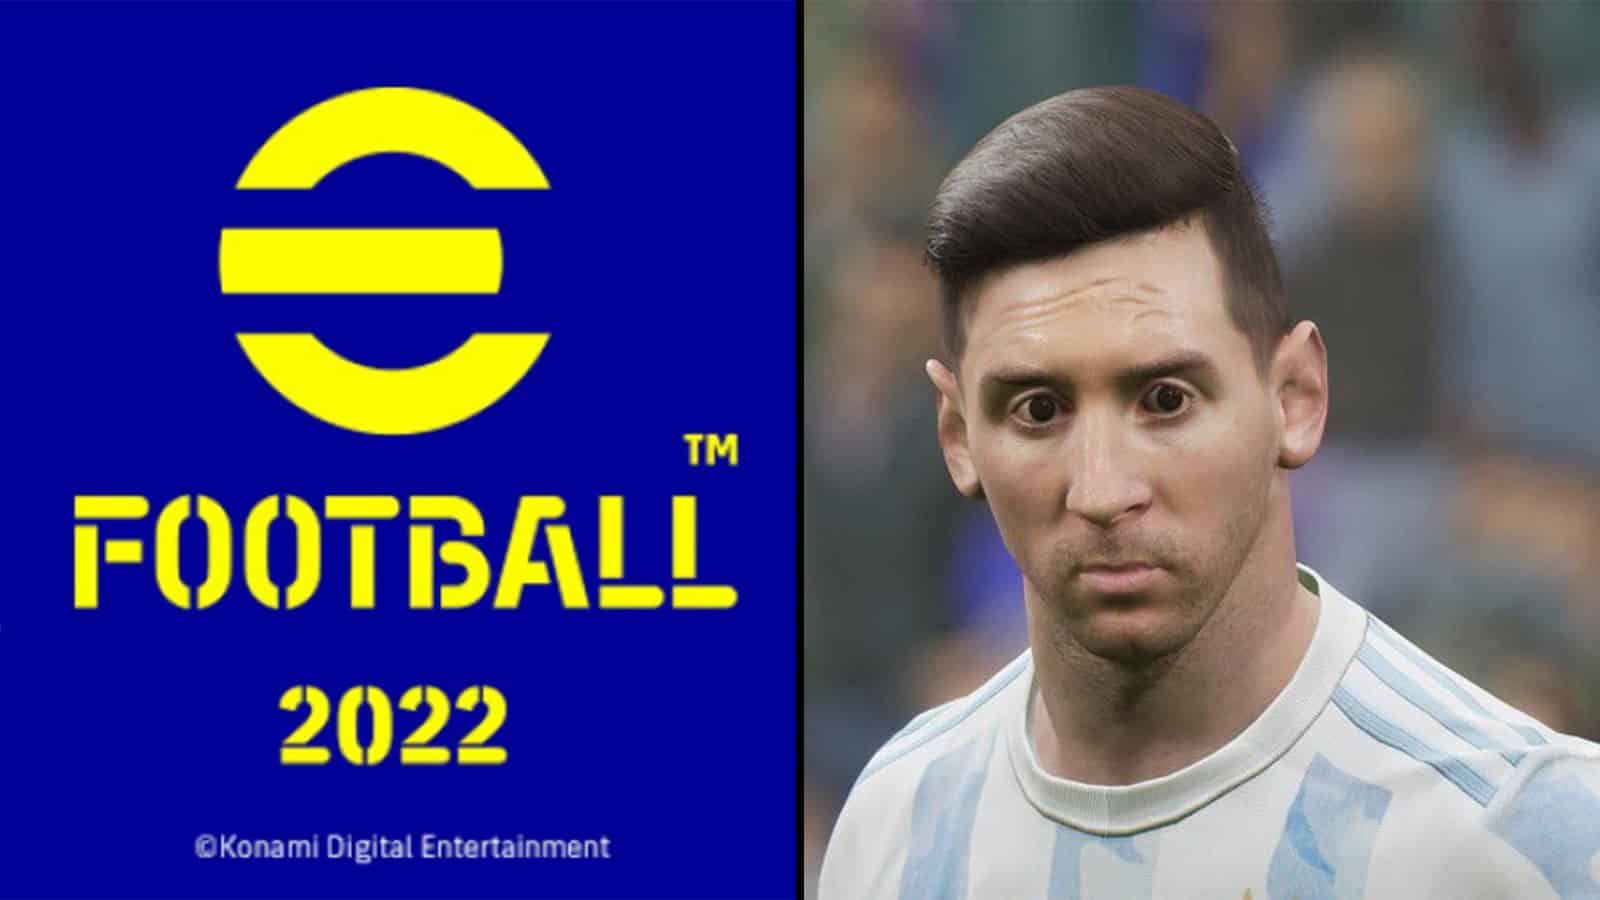 Les joueurs massacrent eFootball 2022 sur les réseaux